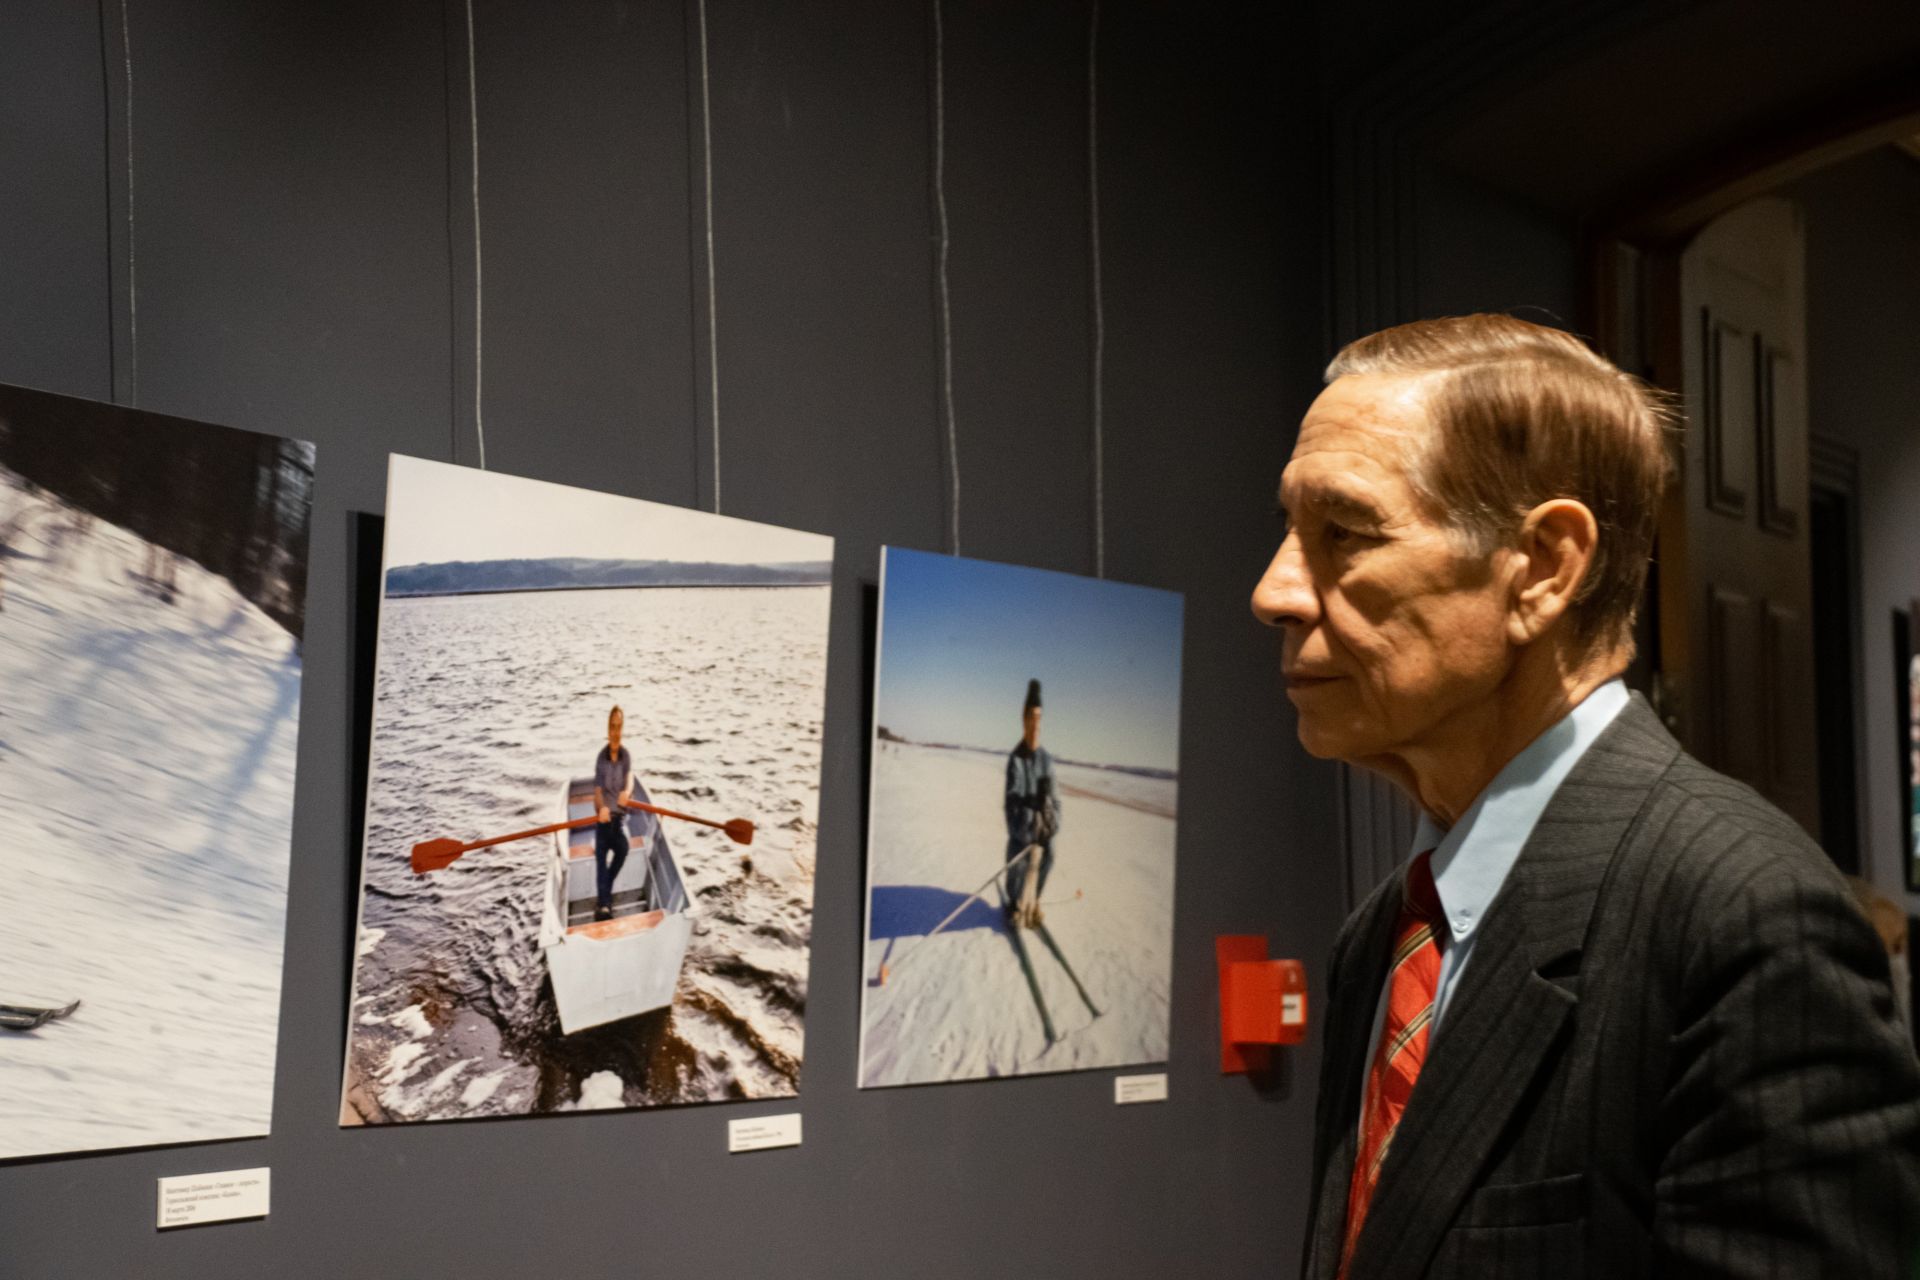 В галерее «Хазинэ» открылась выставка фотографий Михаила КОЗЛОВСКОГО «Эпоха». 24 марта талантливому фотографу исполнилось бы 70 лет